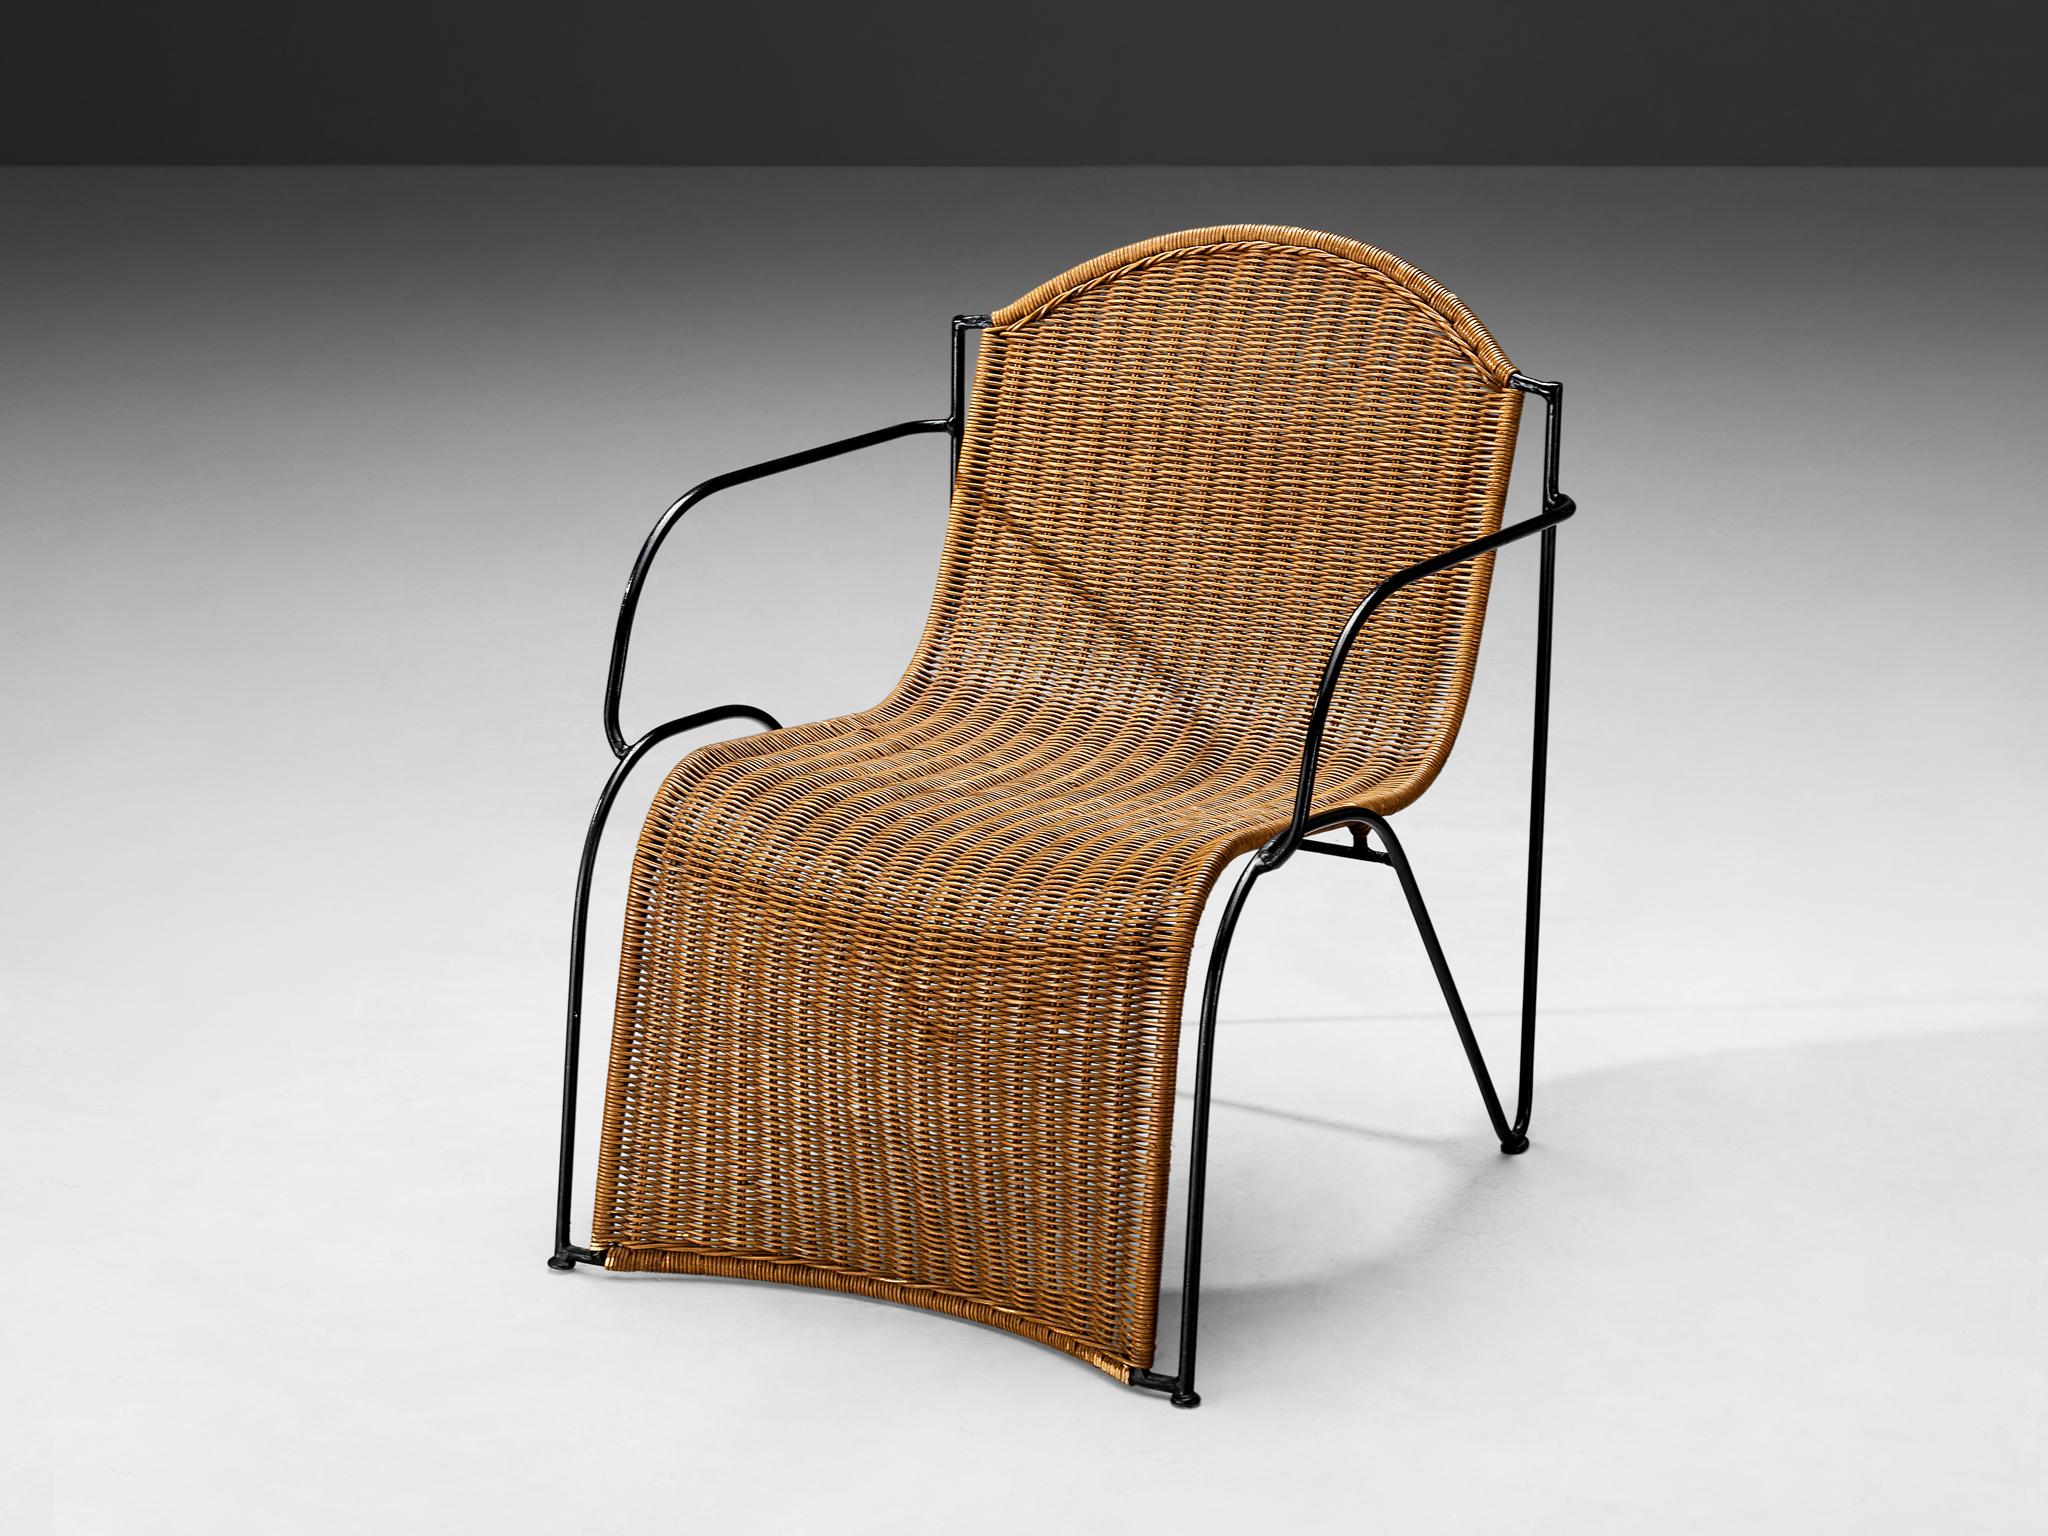 Chaise longue, cannage, métal laqué, Europe, années 1950

Magnifique chaise de salon en rotin et structure en métal laqué noir. Cette pièce incarne l'essence même de l'élégance, de la sophistication et de la modernité. Originaire d'Europe dans les